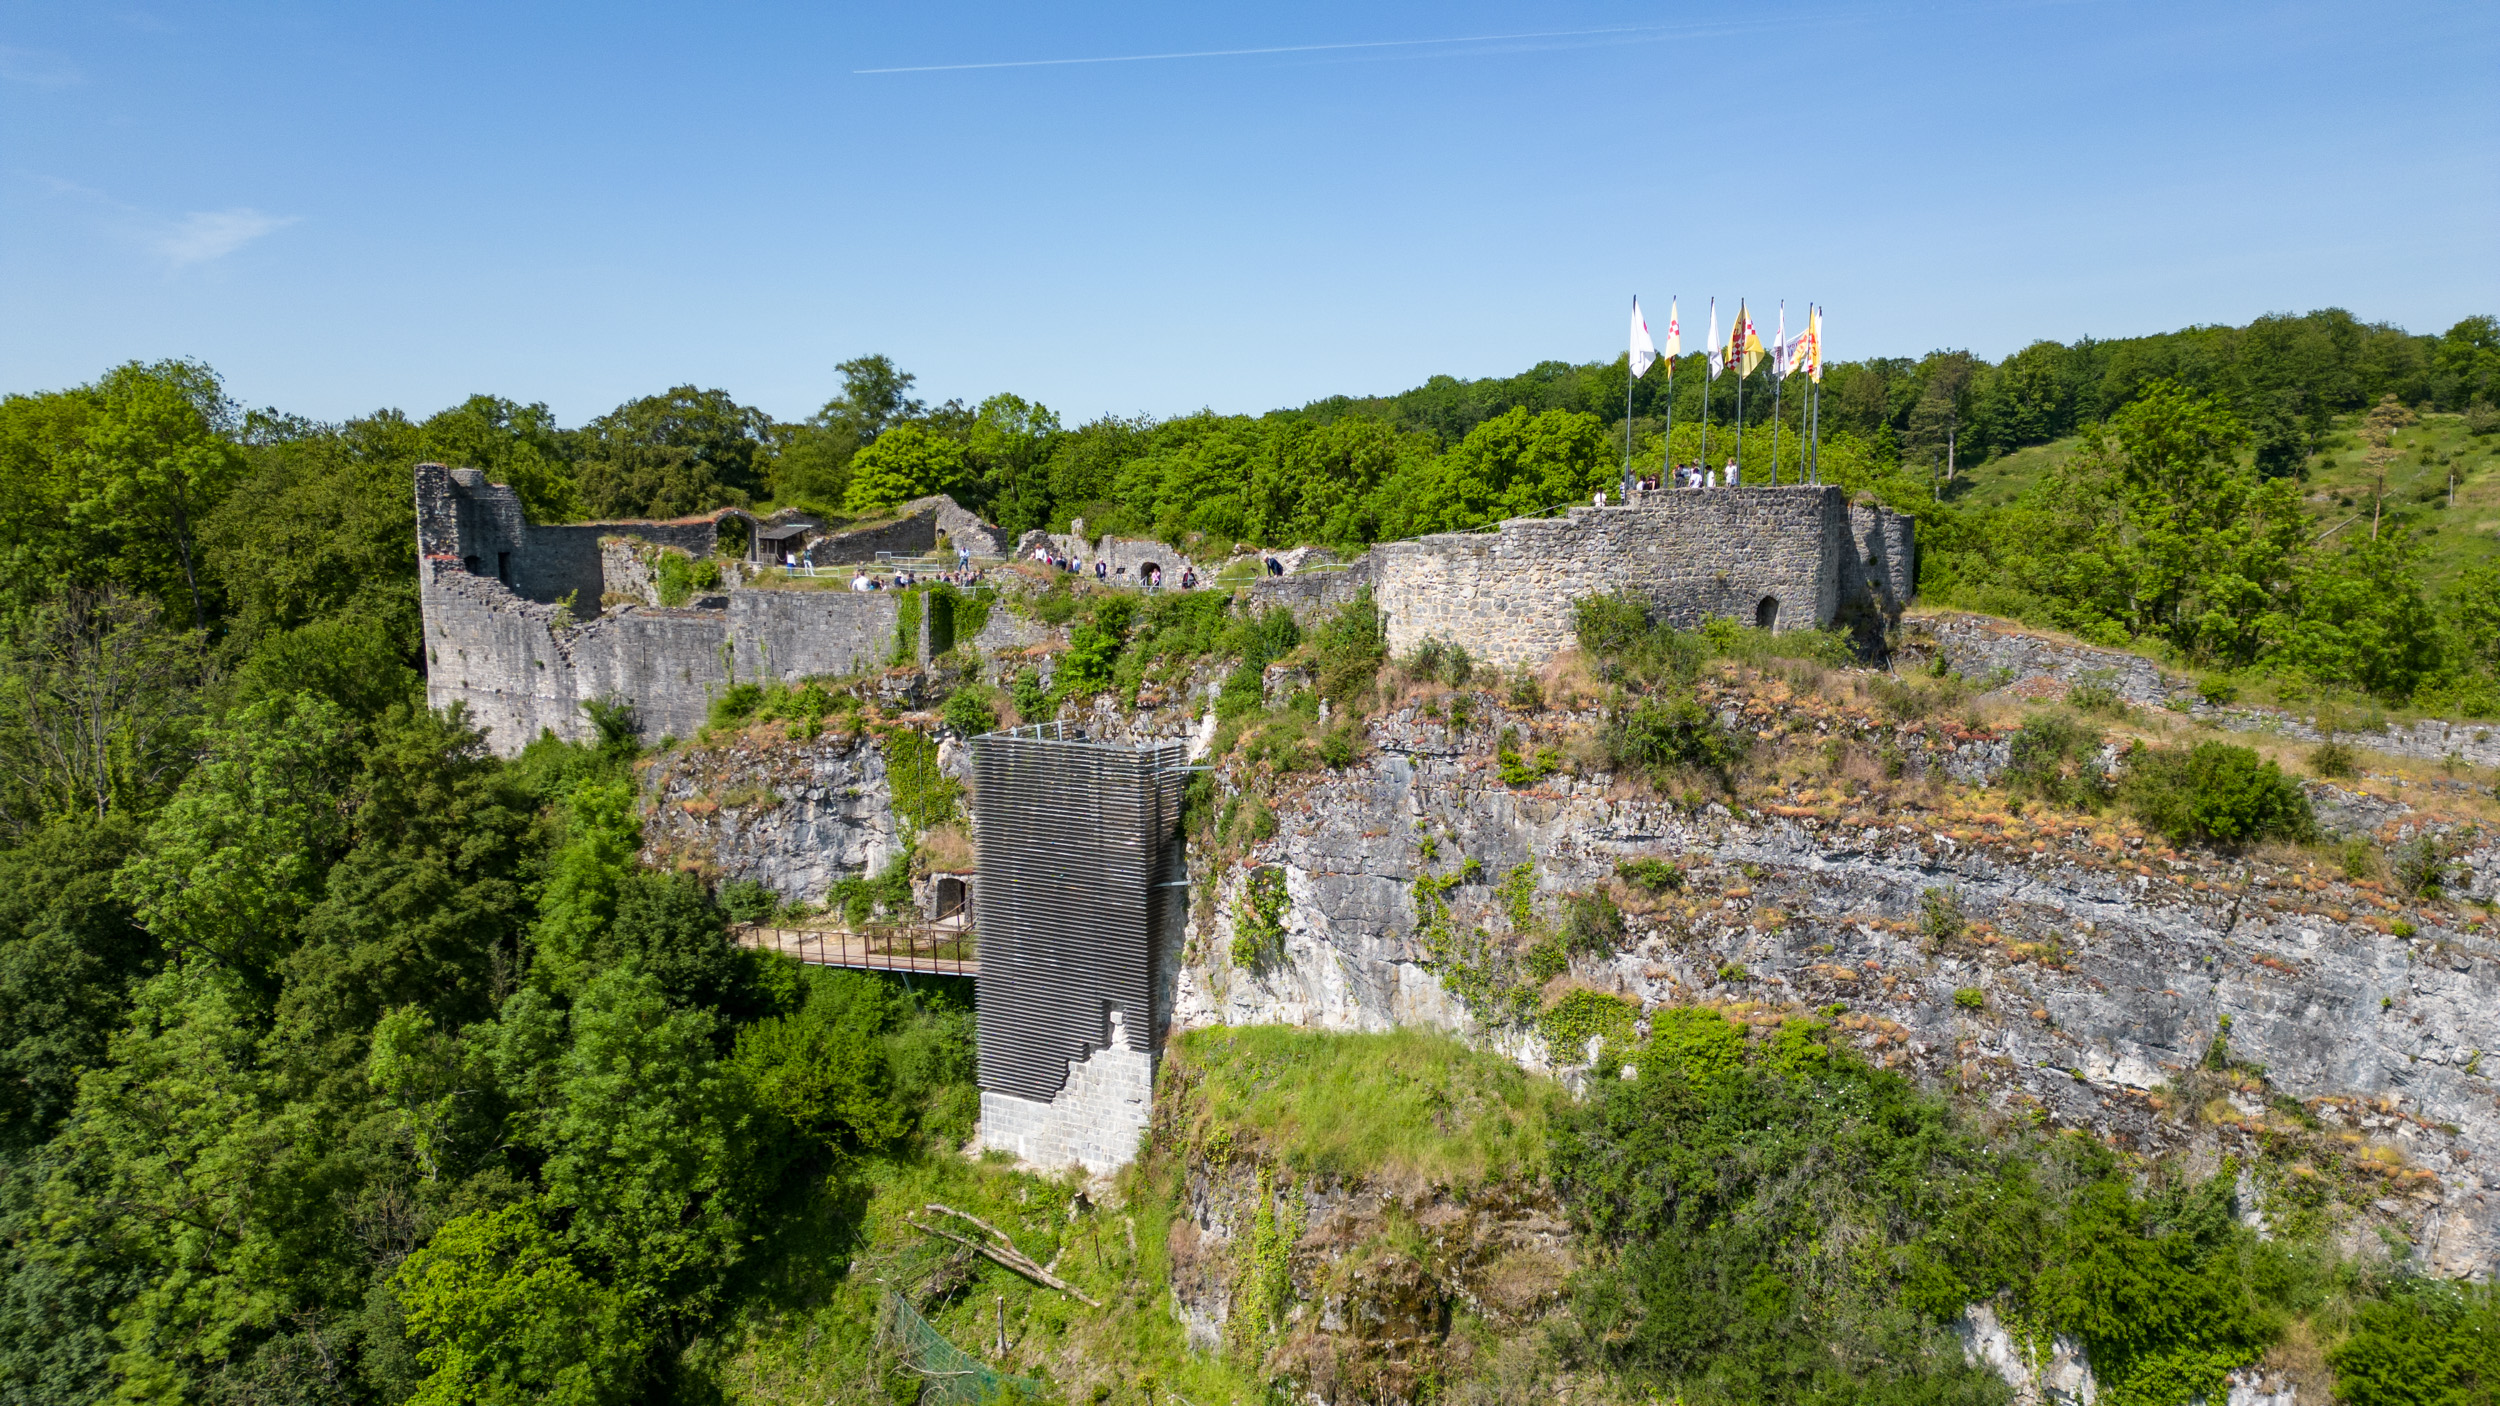 Domaine de Palogne - Chateau fort de Logne a Vieuxville